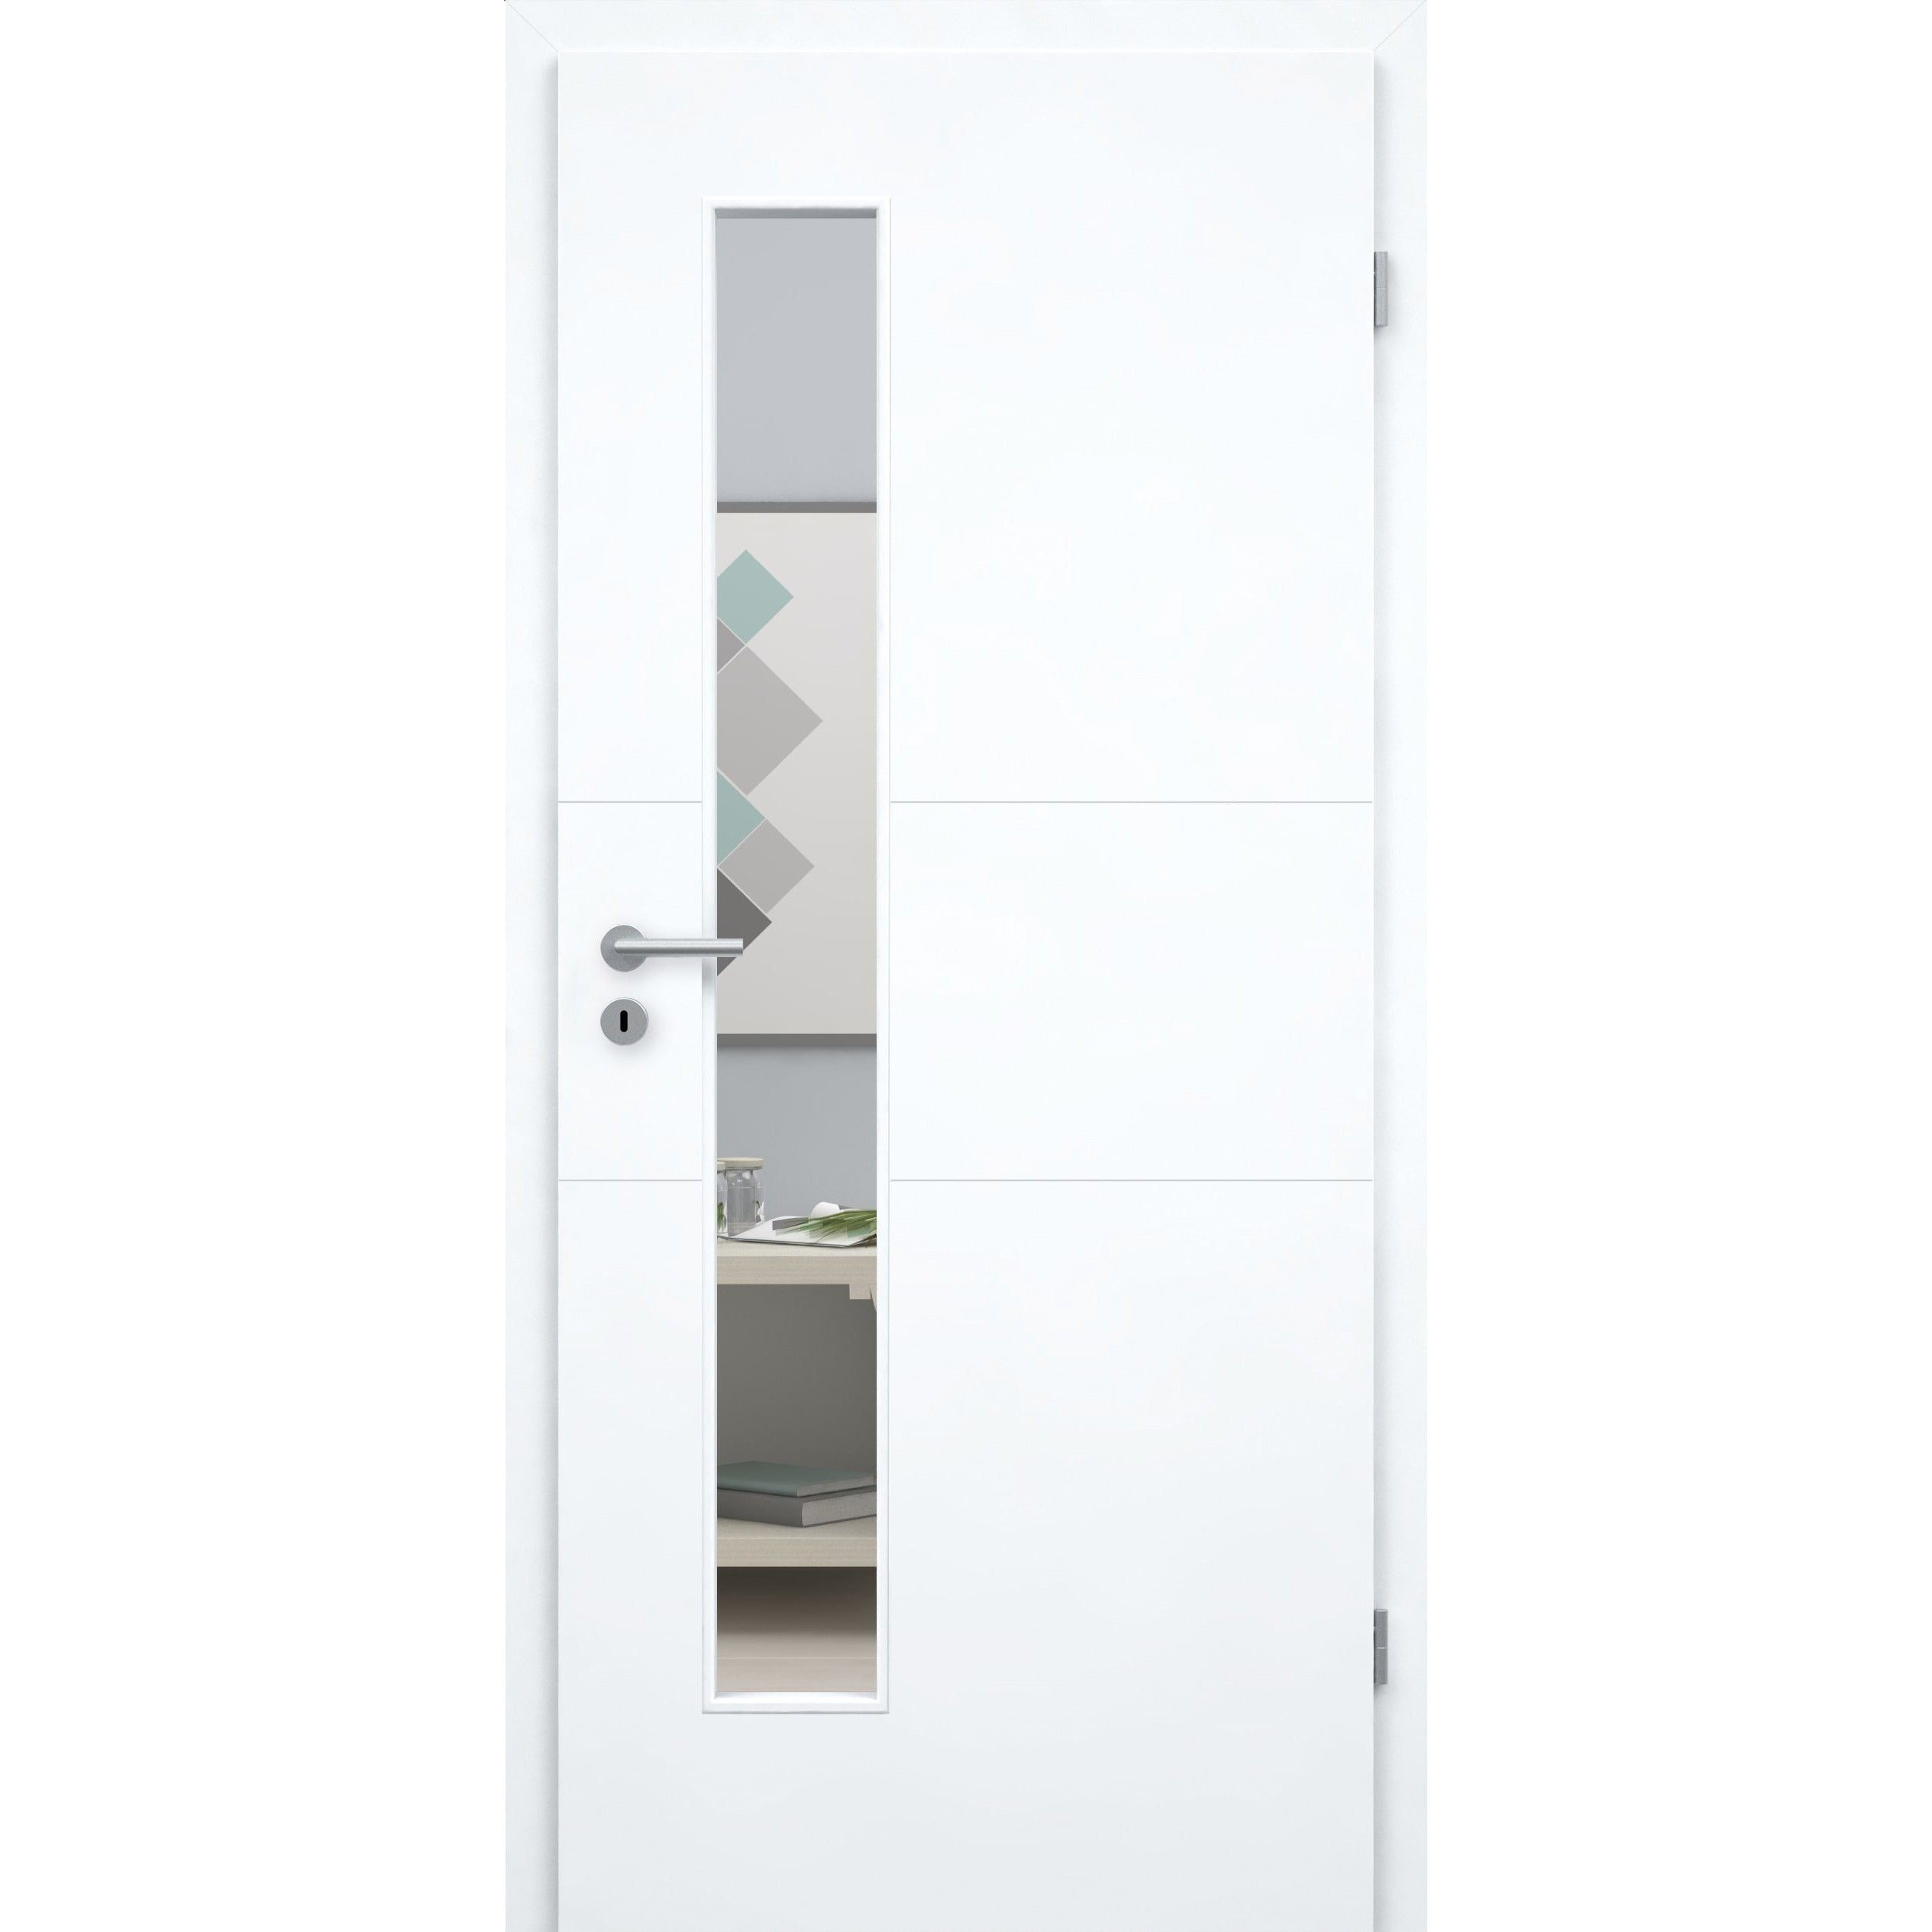 Zimmertür mit Zarge und Lichtausschnitt brillant-weiß 2 Rillen quer Designkante - Modell Designtür Q23LAS